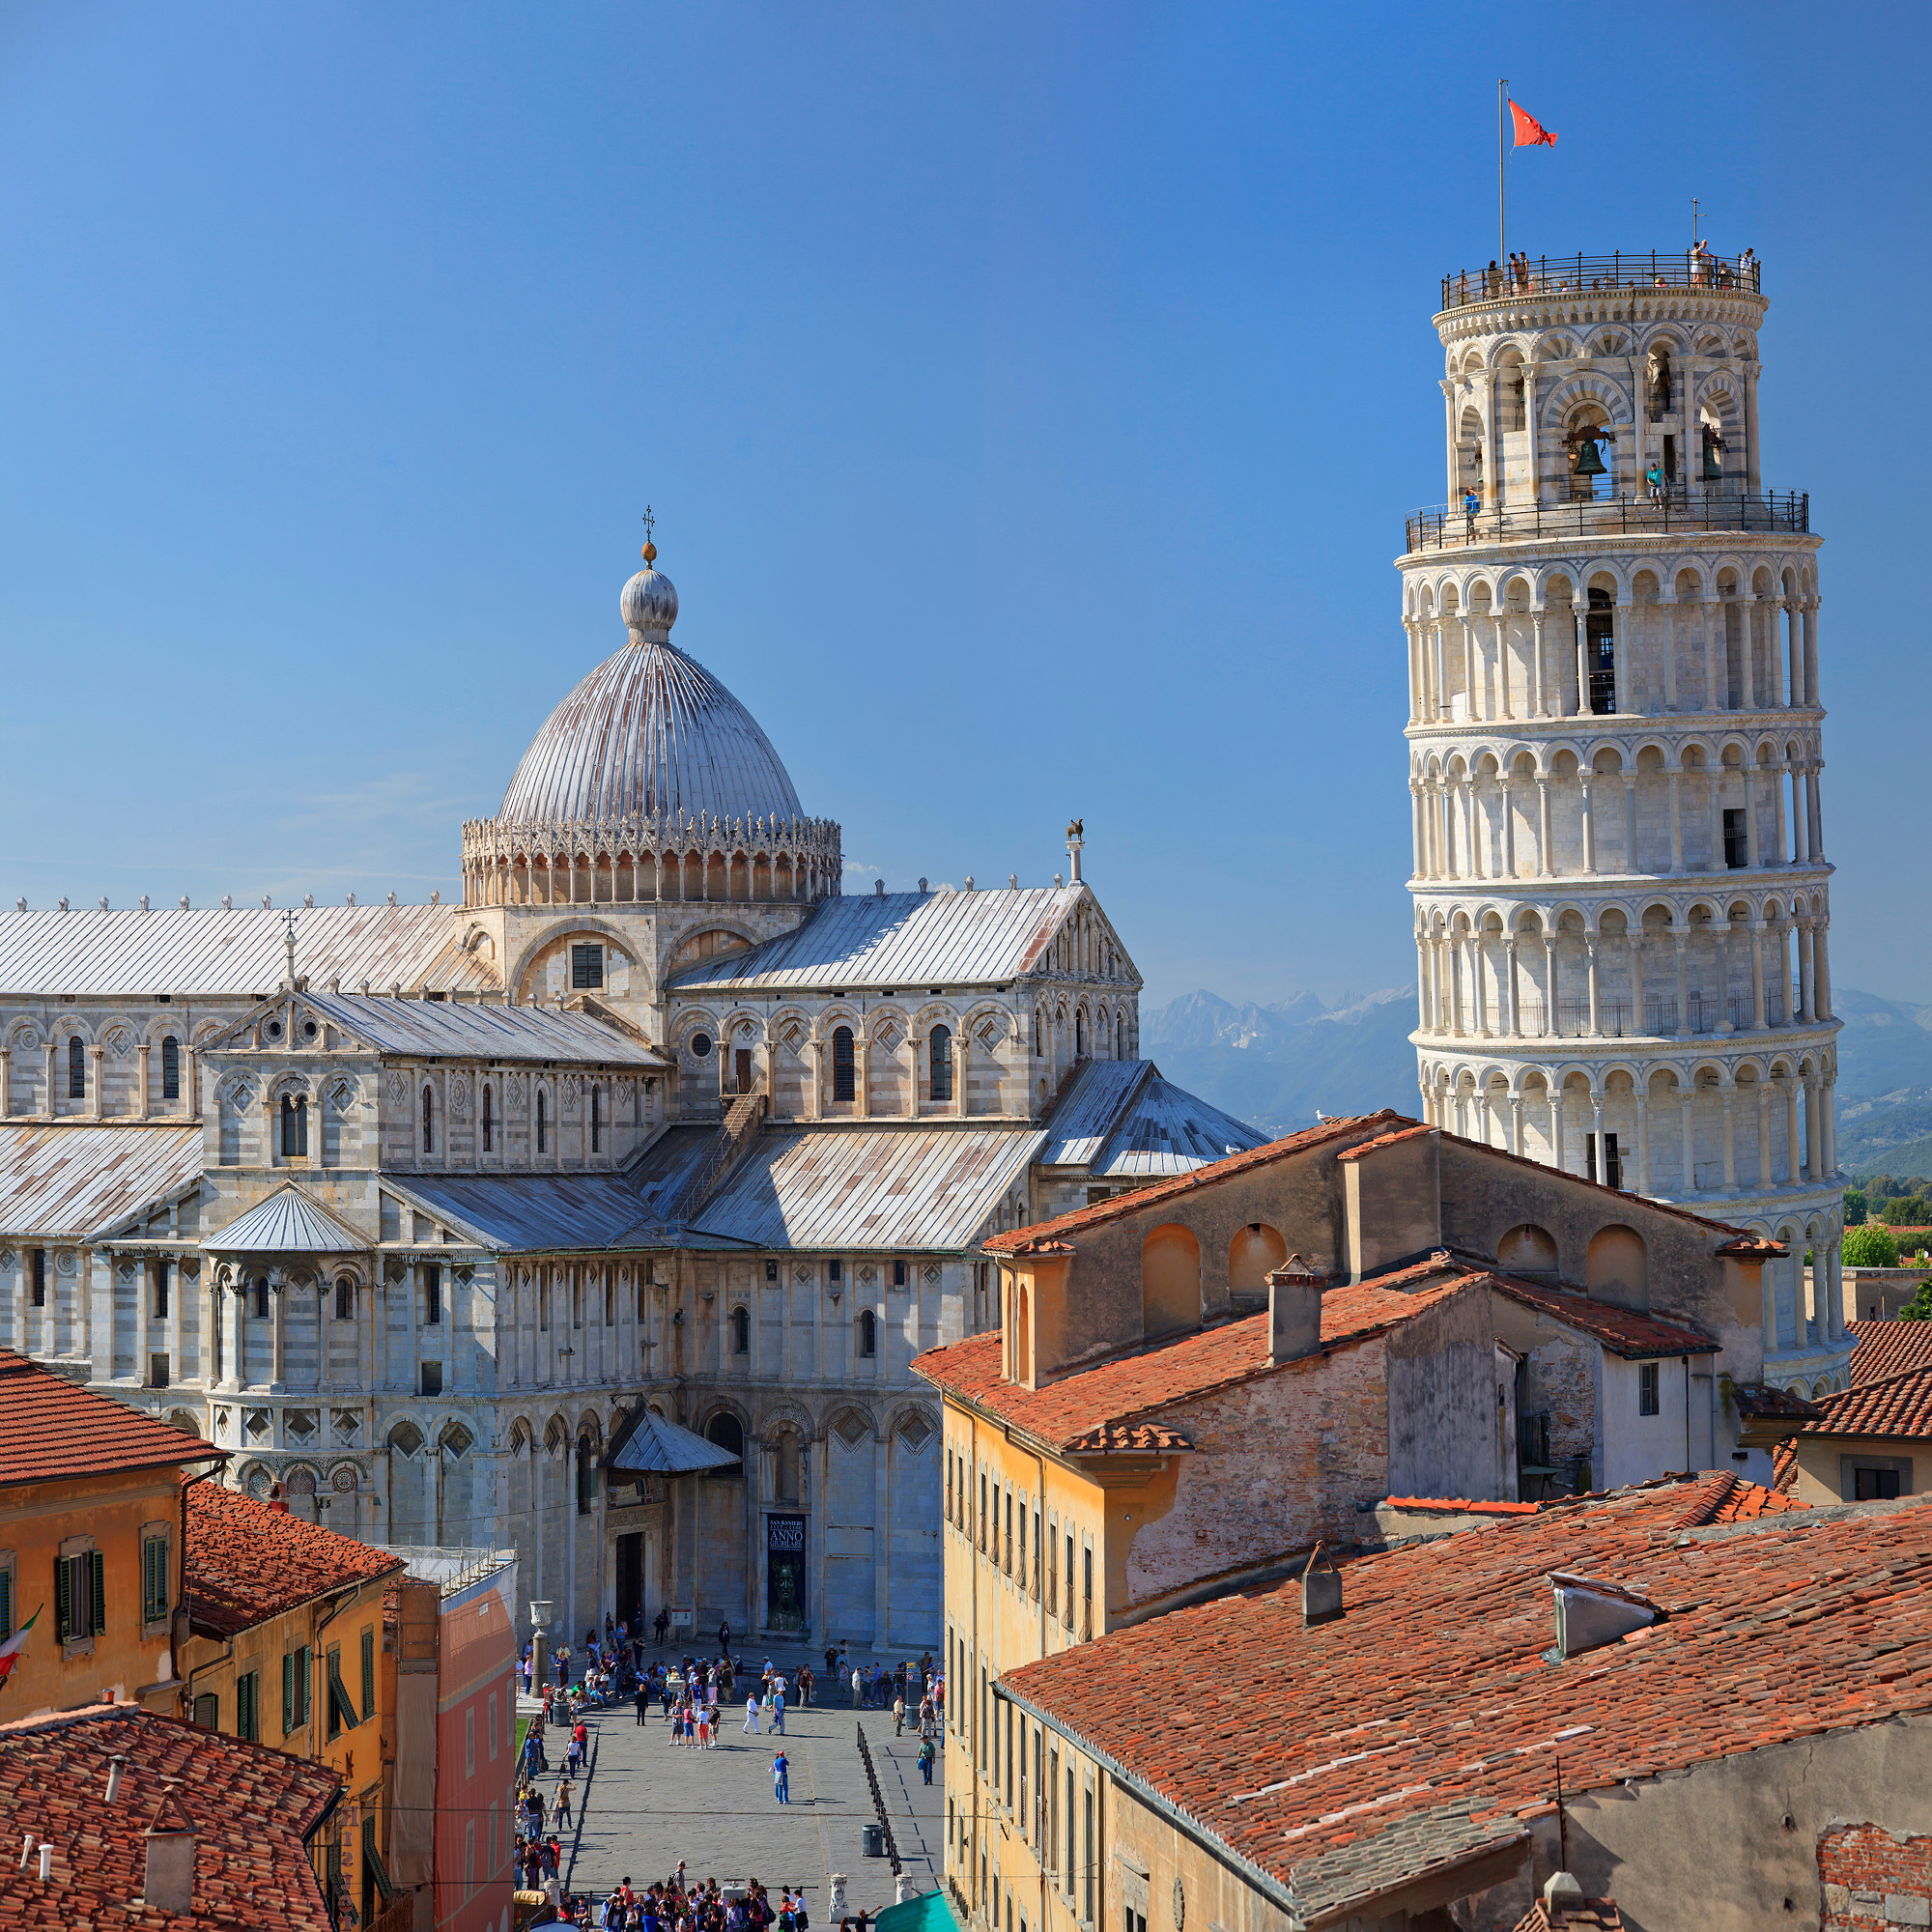 Dom und Schiefer Turm von Pisa